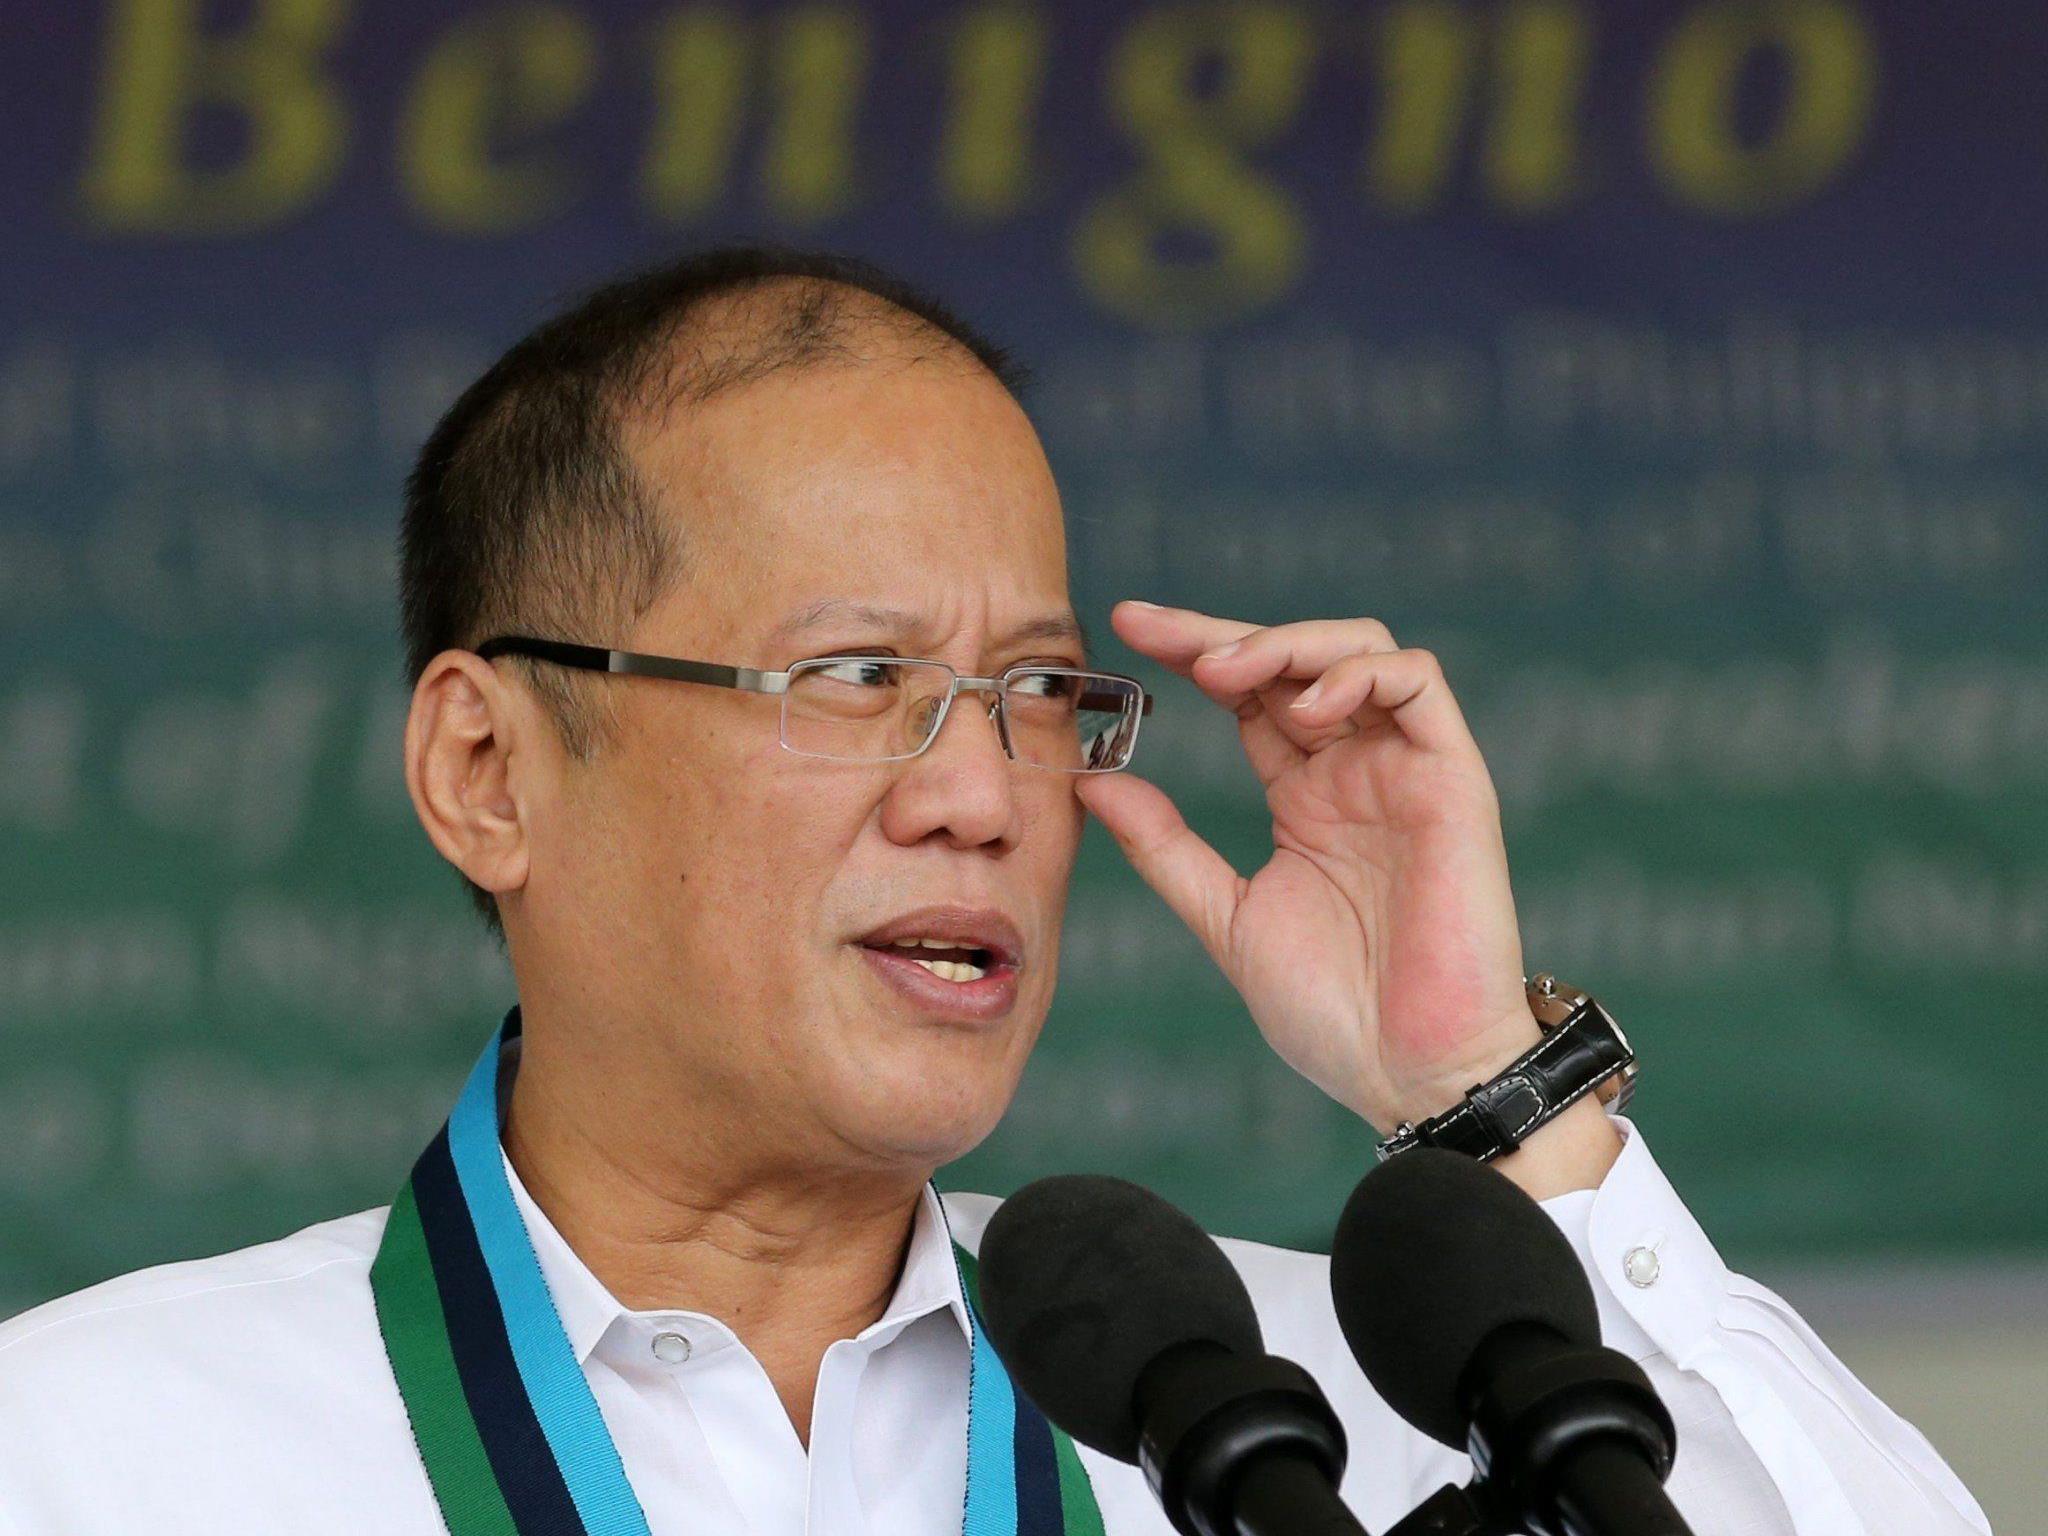 Chinesische Nachrichtenagentur: Aquino (Bild) als "amateurhafter Politiker entlarvt".